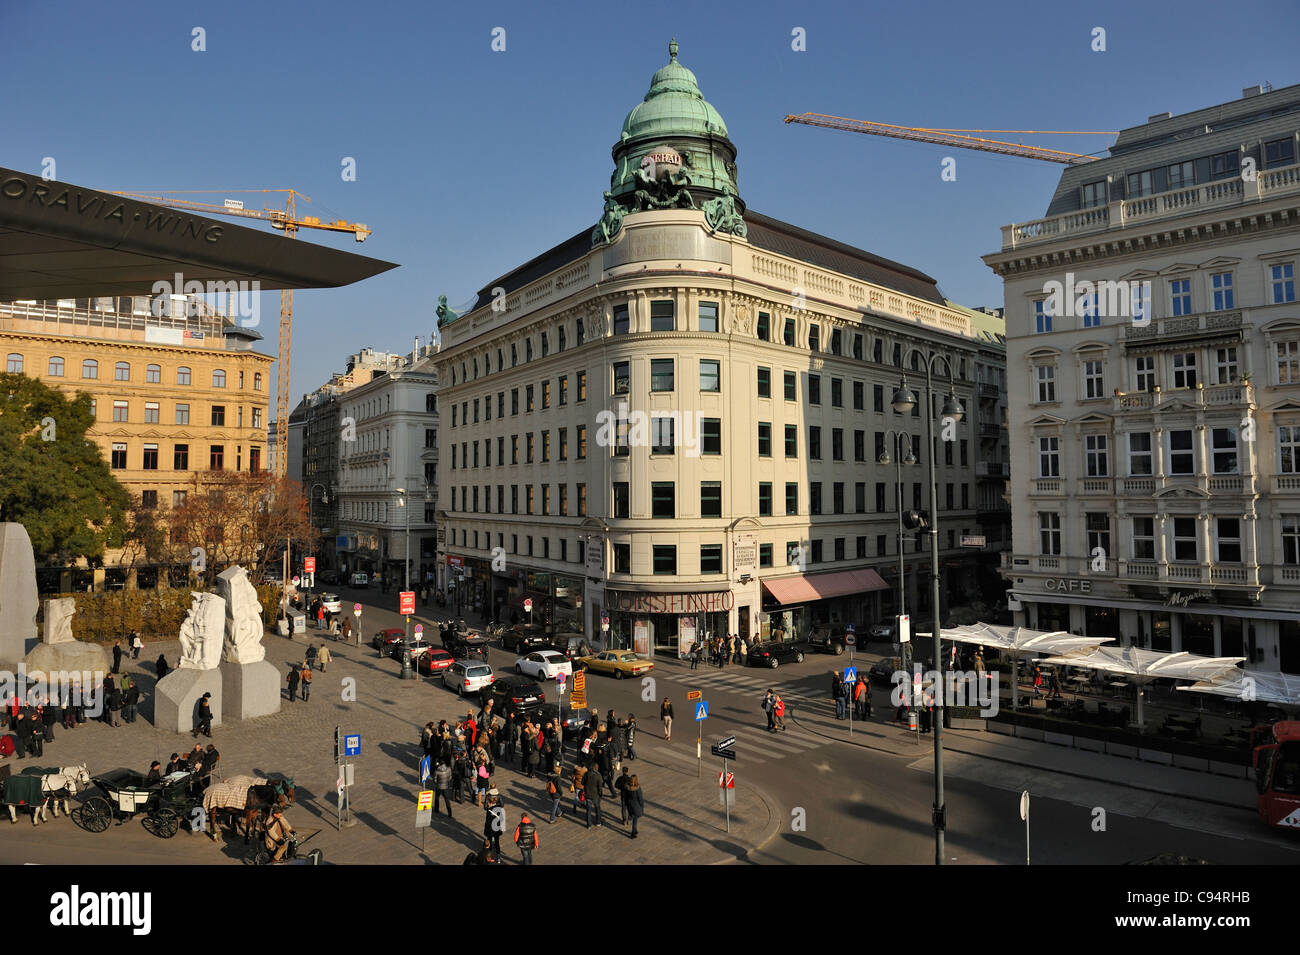 Landmarks of Vienna city center, Wein, Austria Stock Photo